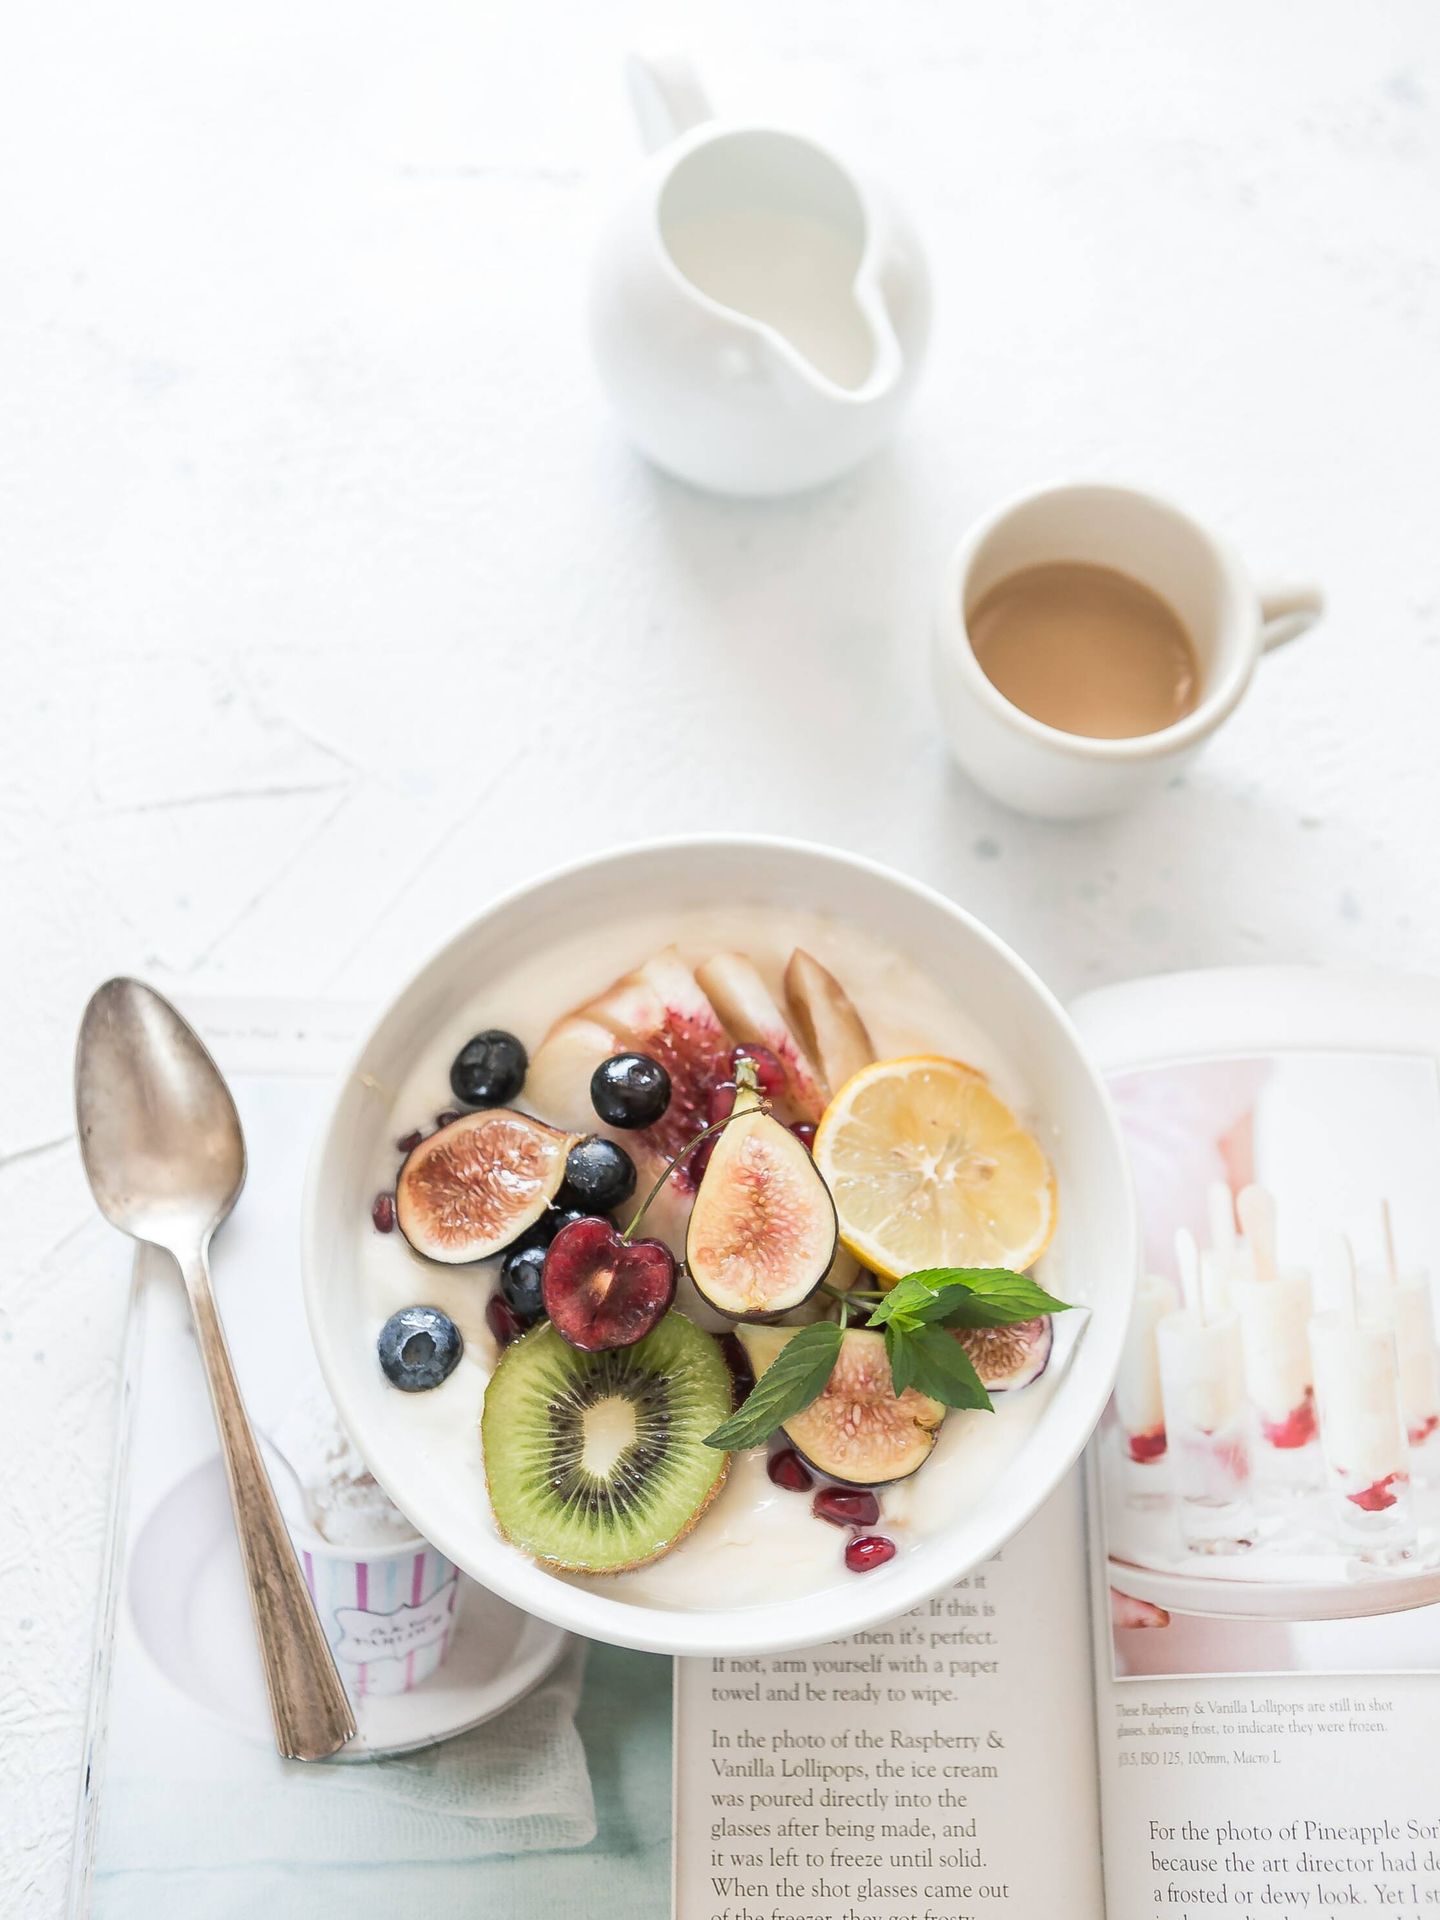 La mejor hora para desayunar sin engordar. (Unsplash/Brooke Lark)